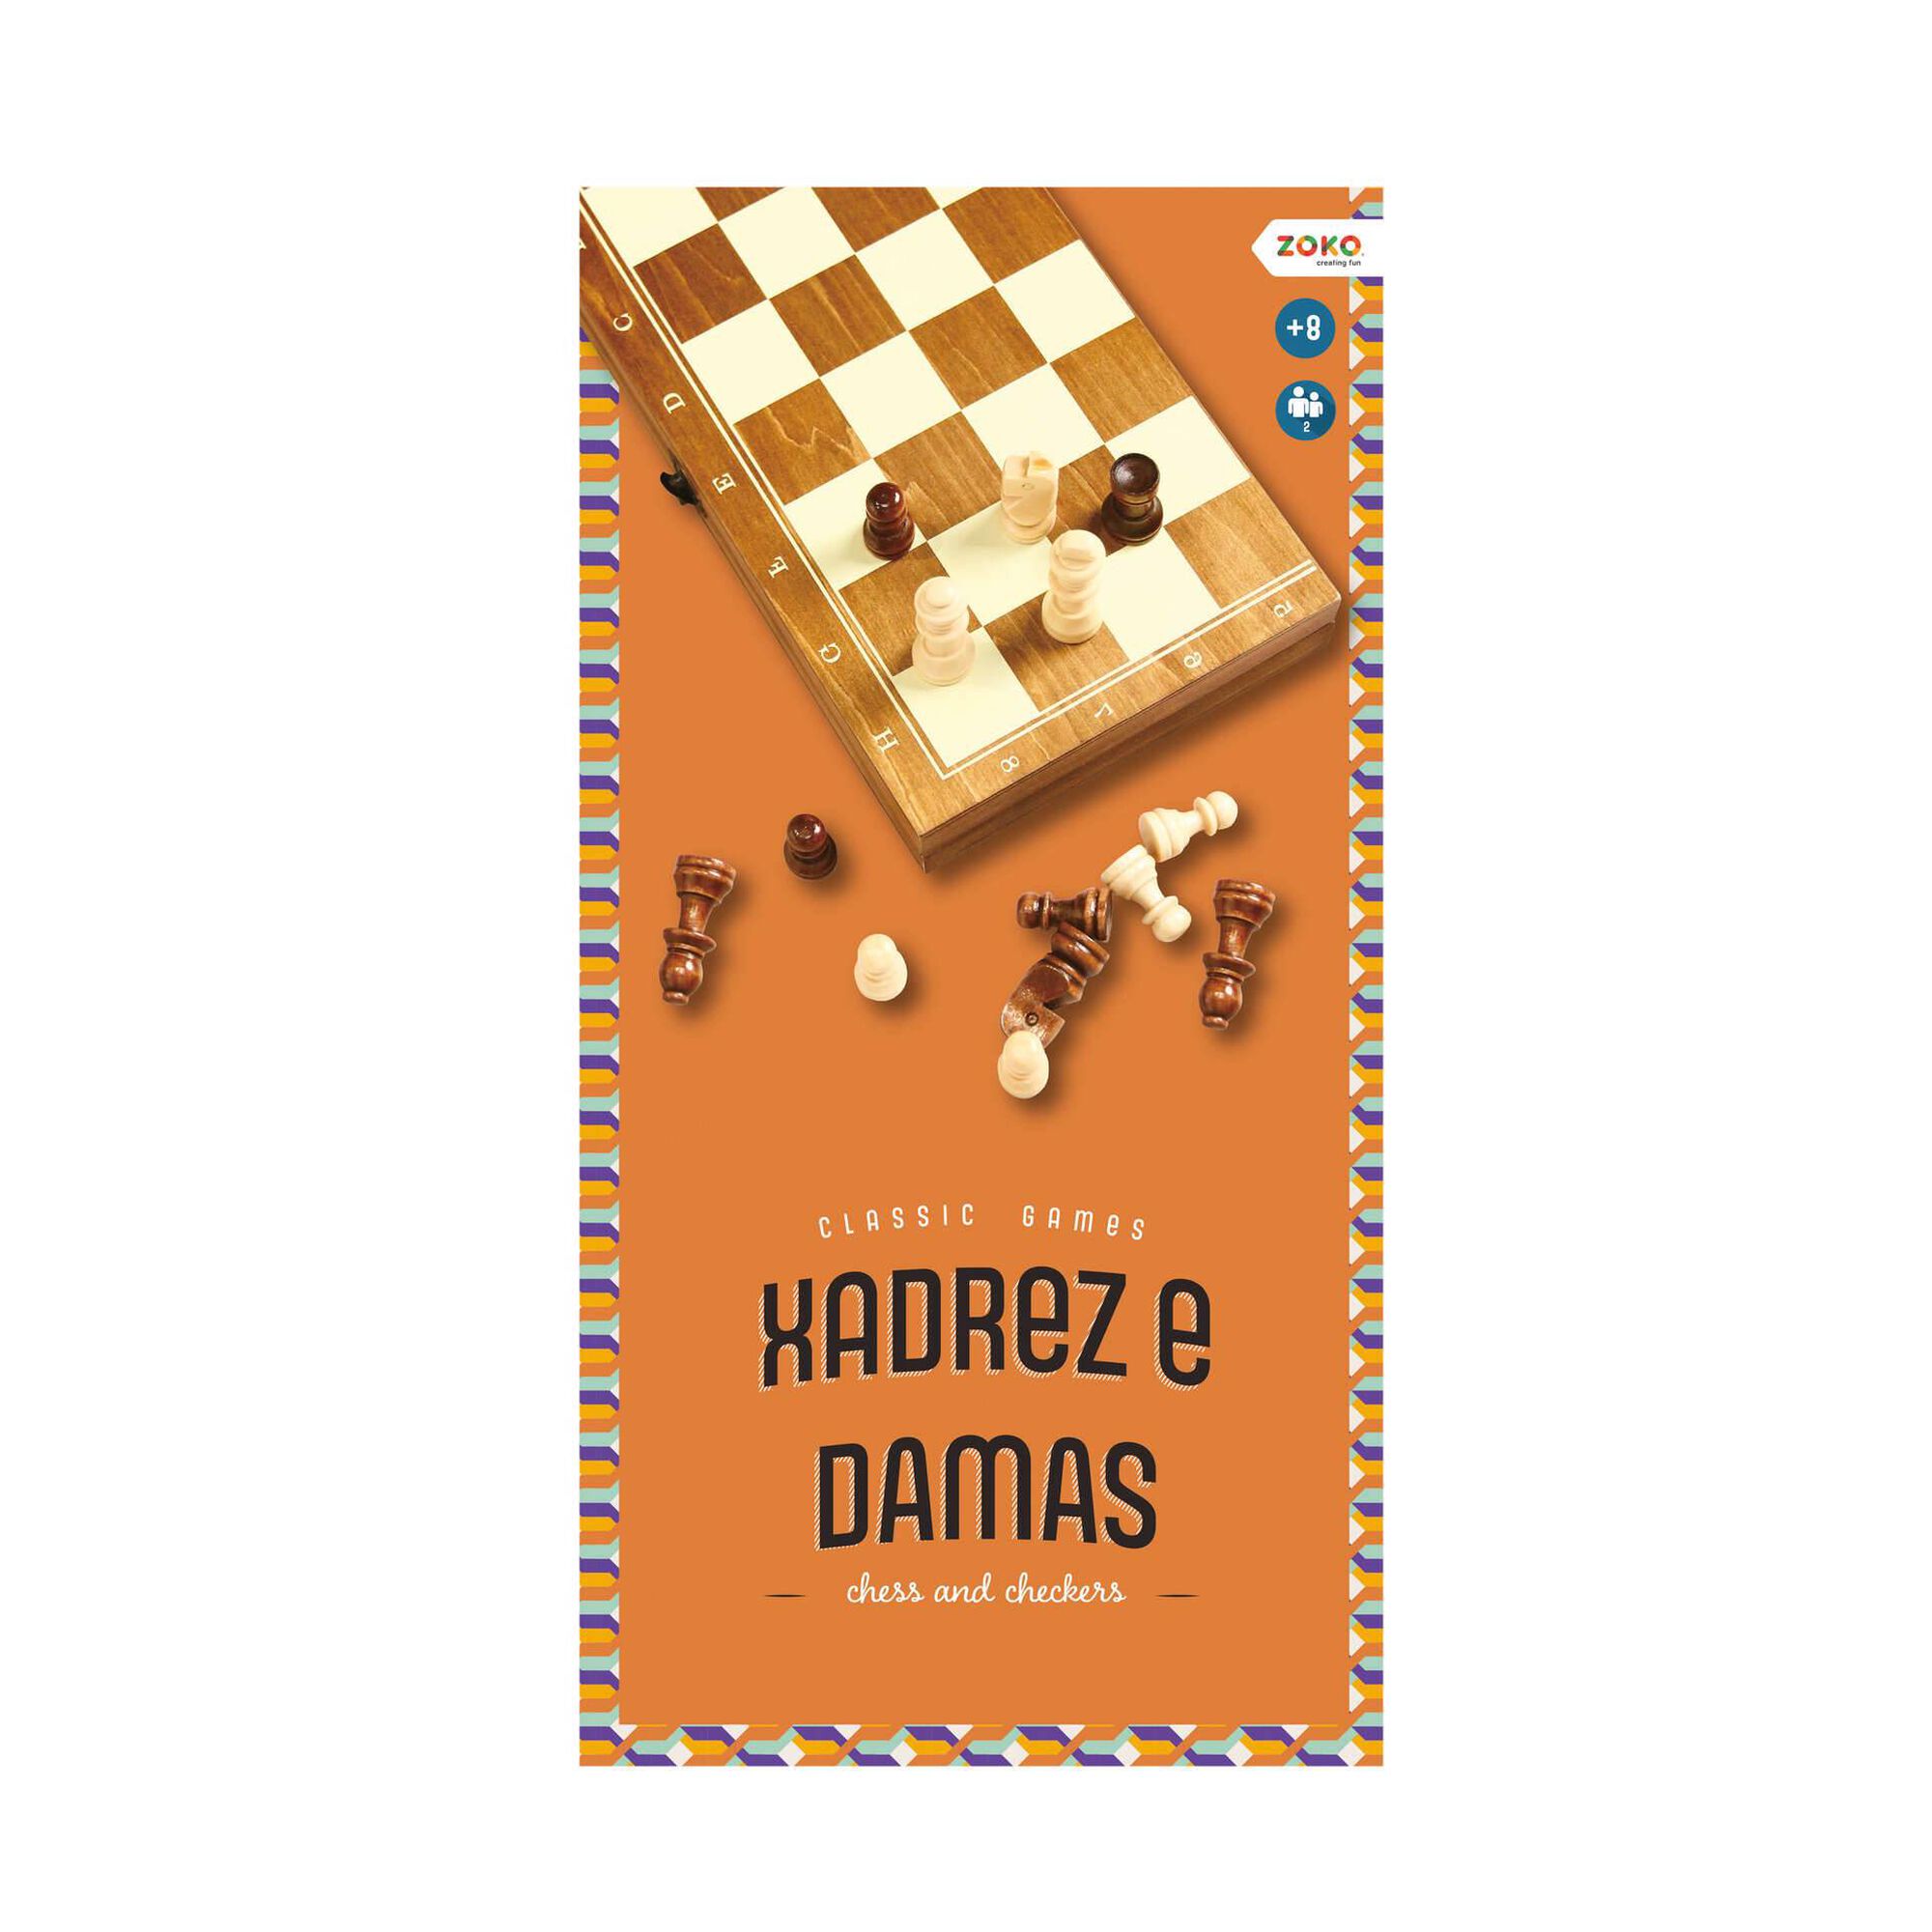 SAKKFIGURÁK 3  Peças de xadrez, Tabuleiro de xadrez, Conjunto de xadrez